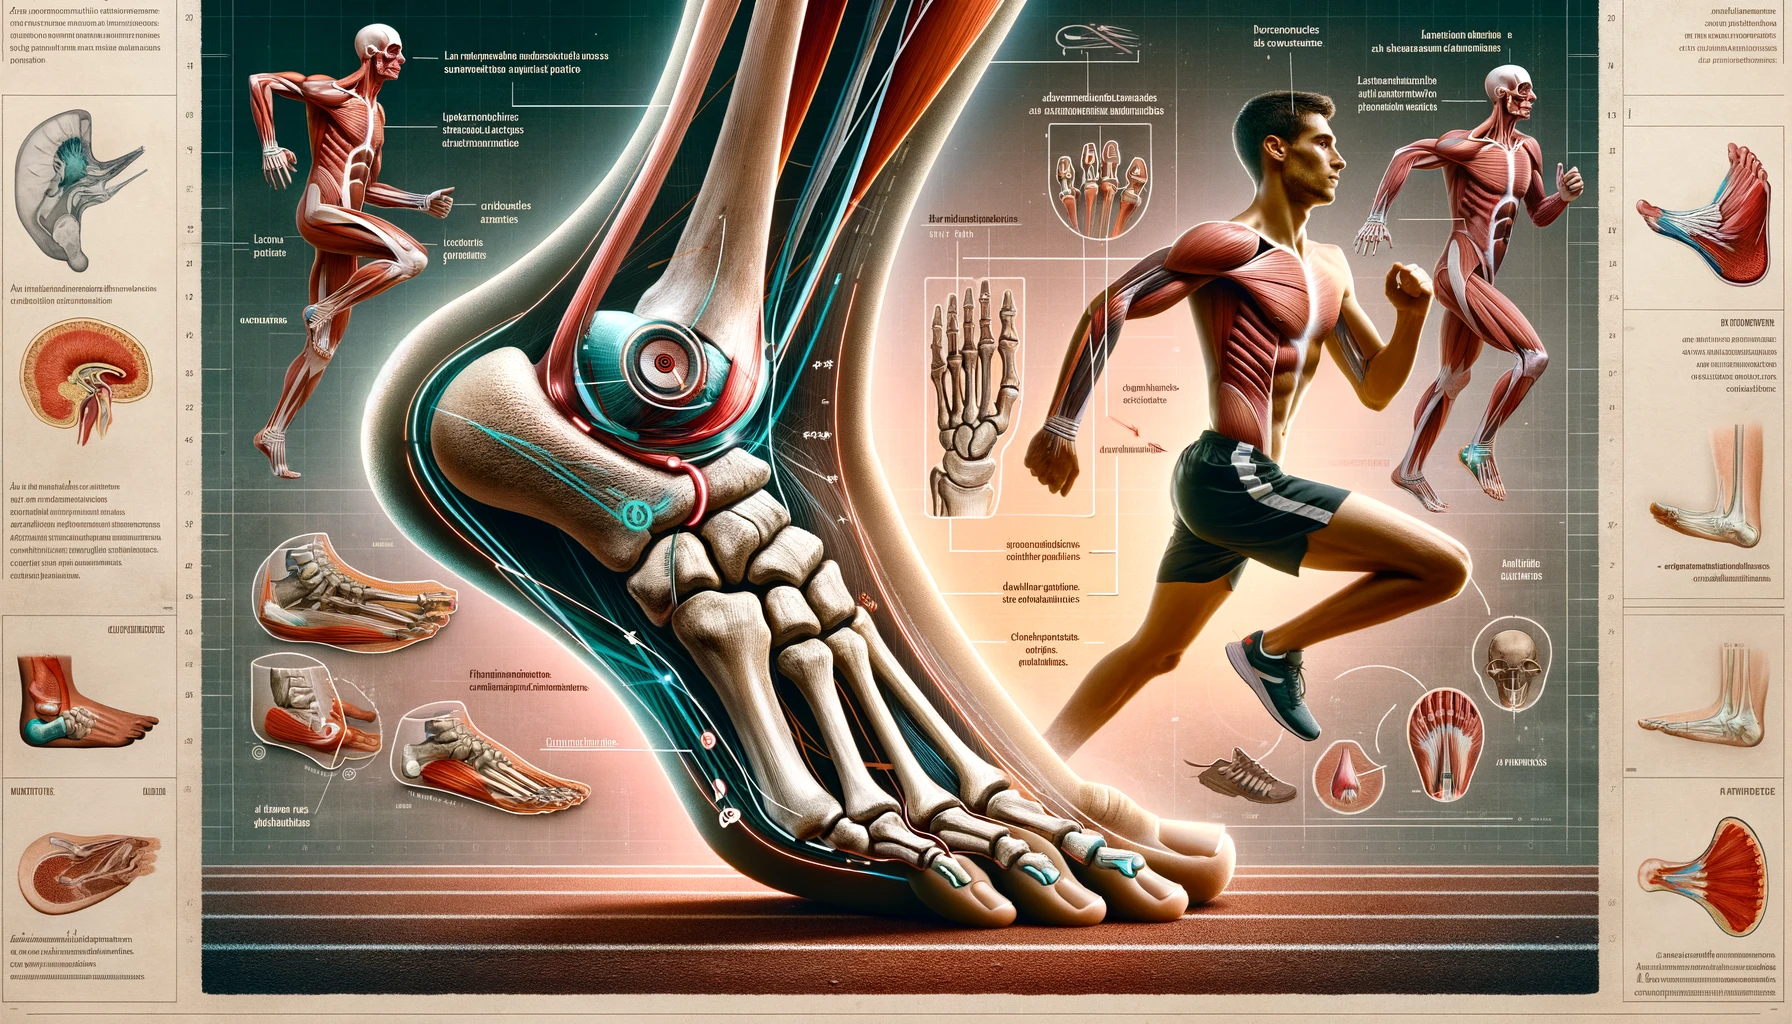 Anatomie humaine, course, muscles, squelette, éducation, infographie.